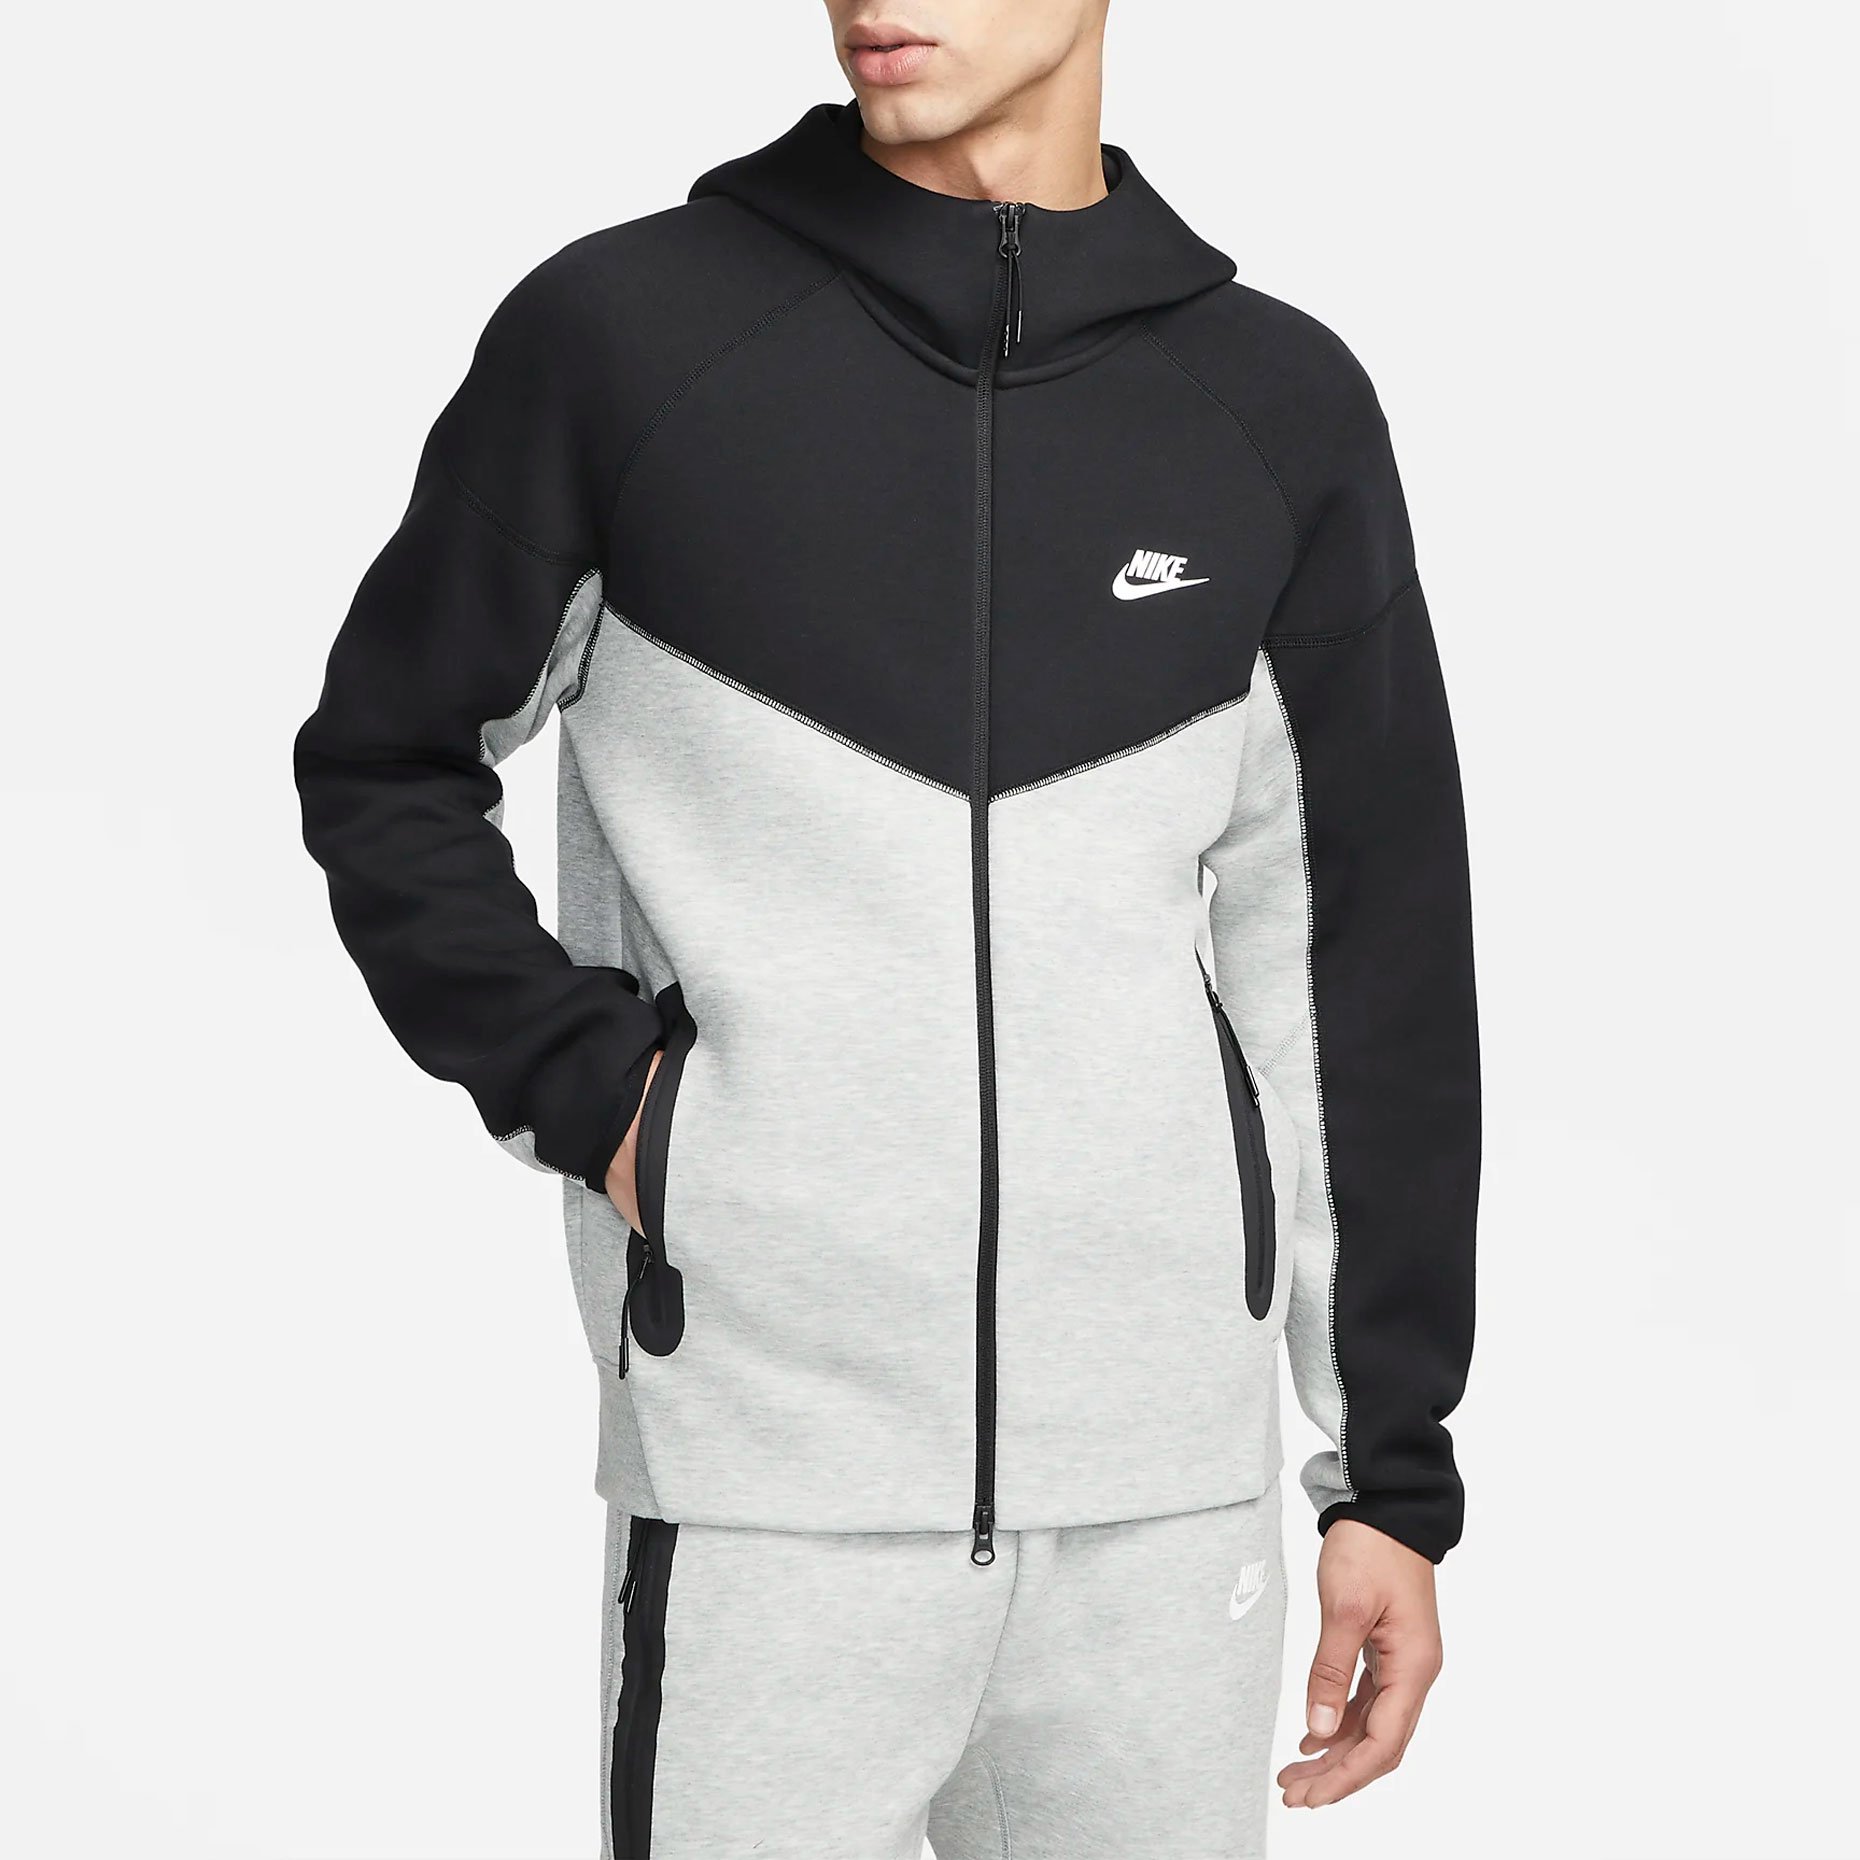 Куртка от спортивного костюма Nike Sportswear Tech Fleece